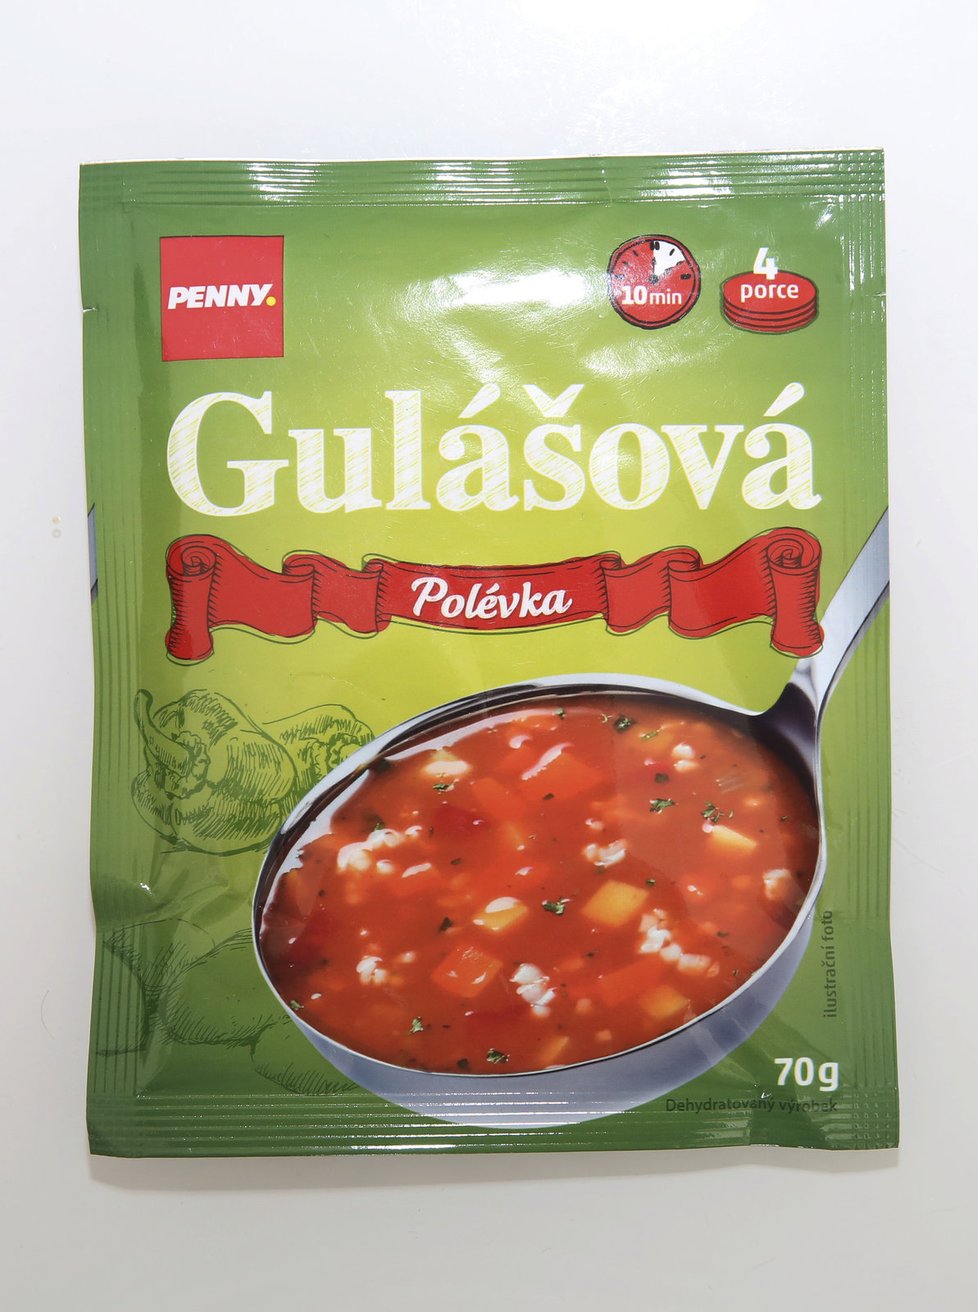 Penny Gulášová polévka